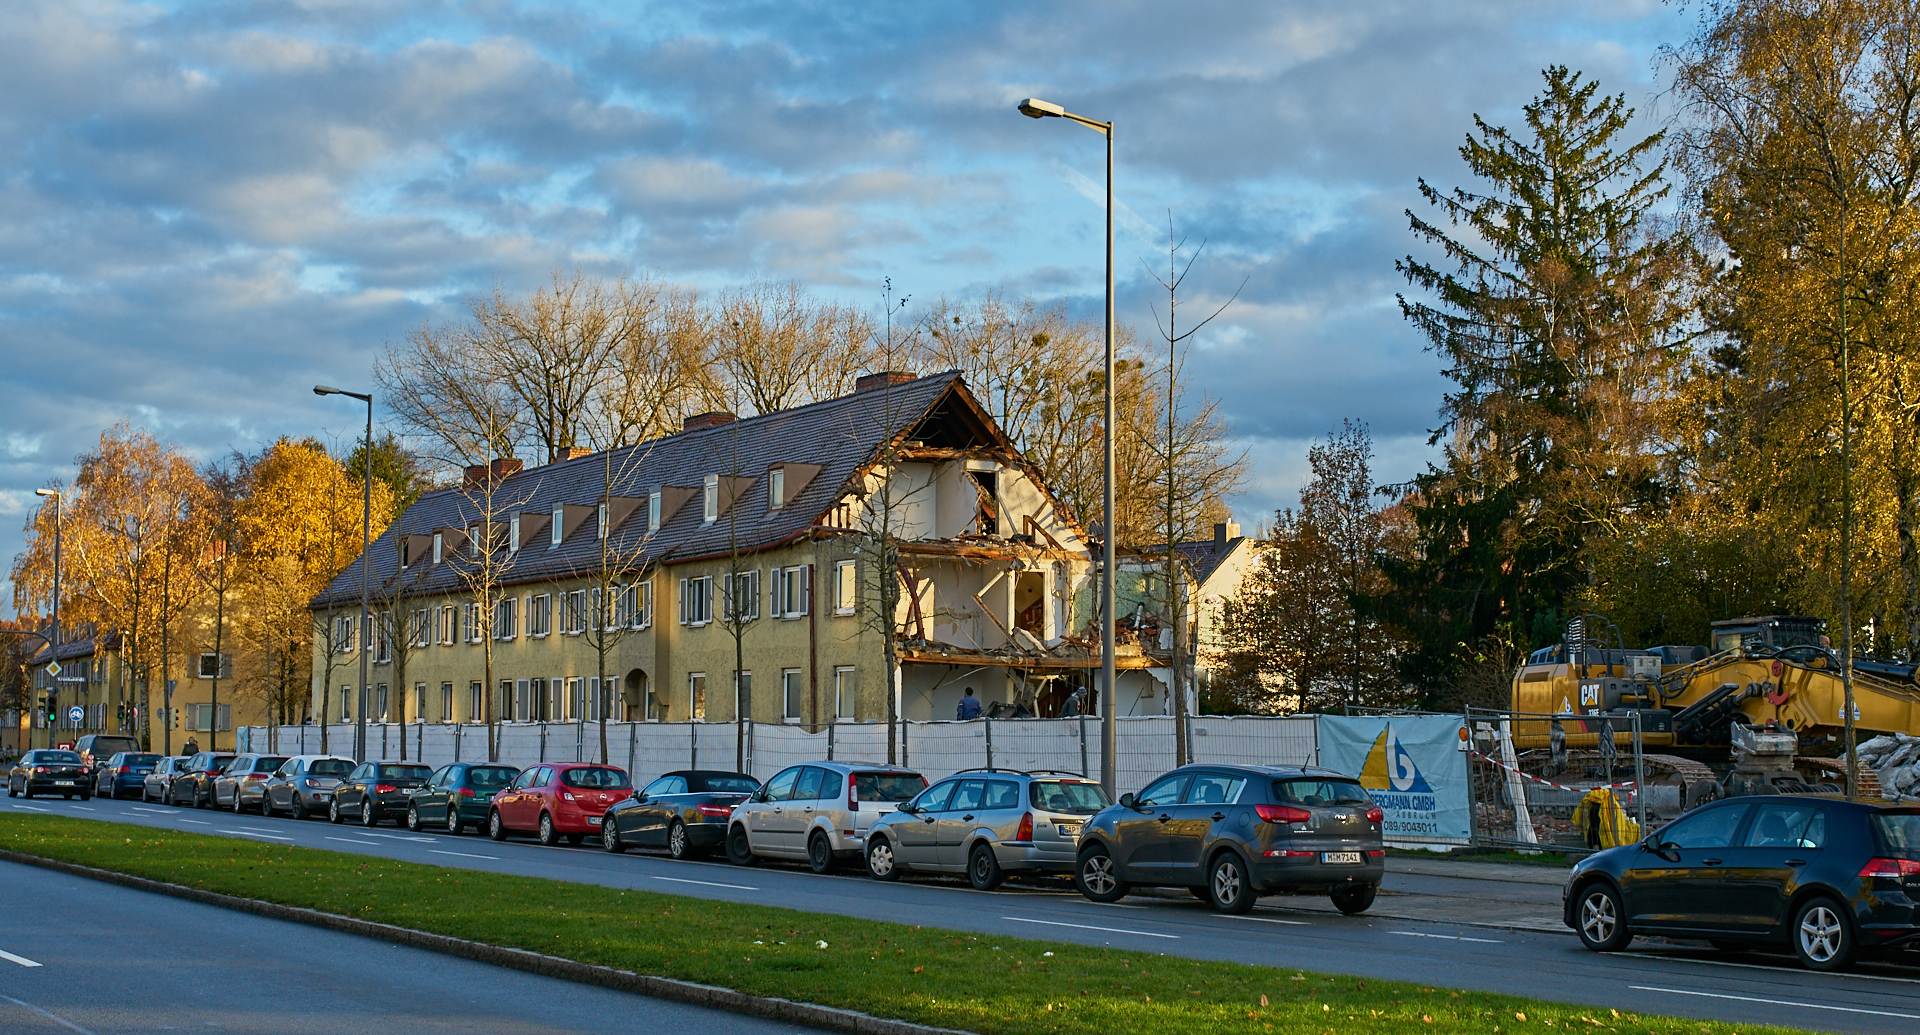 Neuperlach-maikaefersiedlung am 17.11.2016